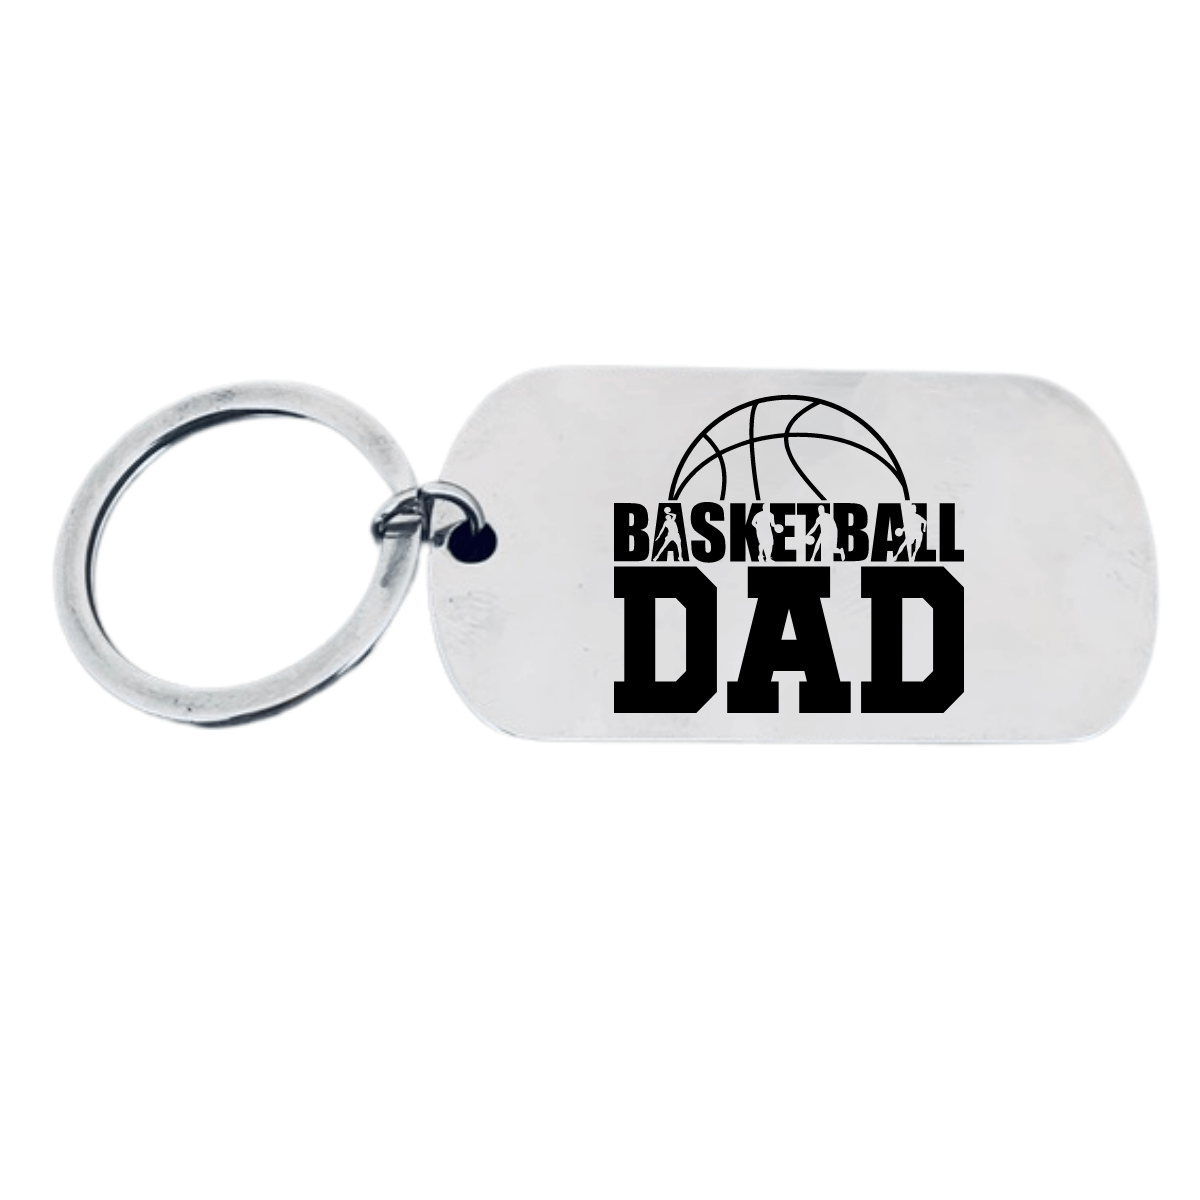 Basketball Dad Tog Tag Keychain